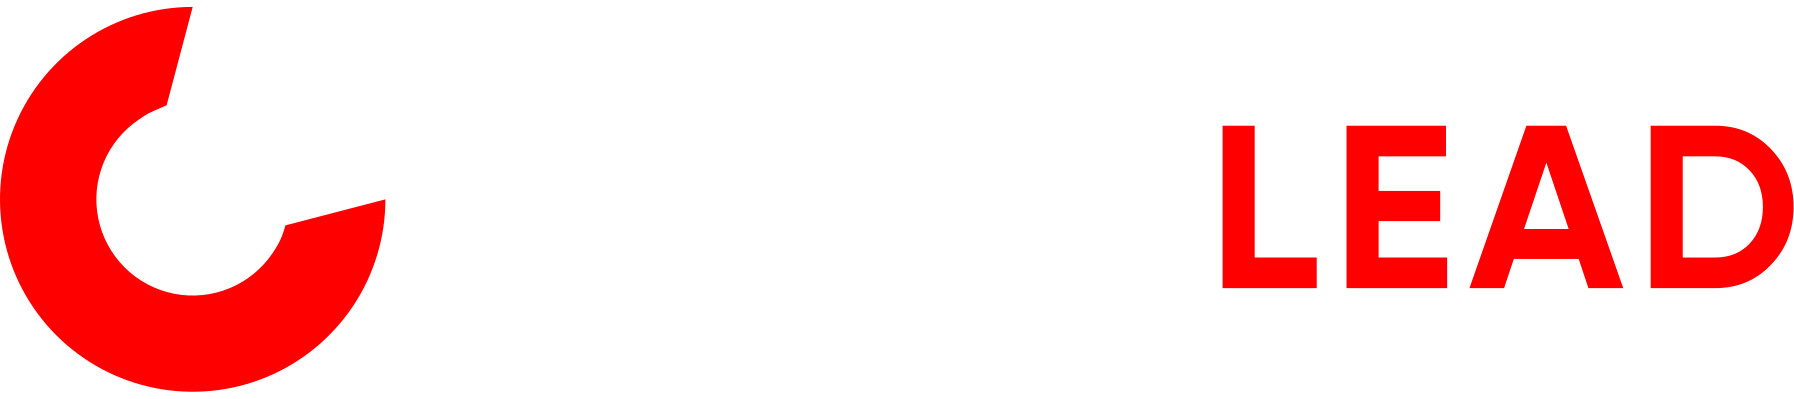 CLICKLEAD - Company logo